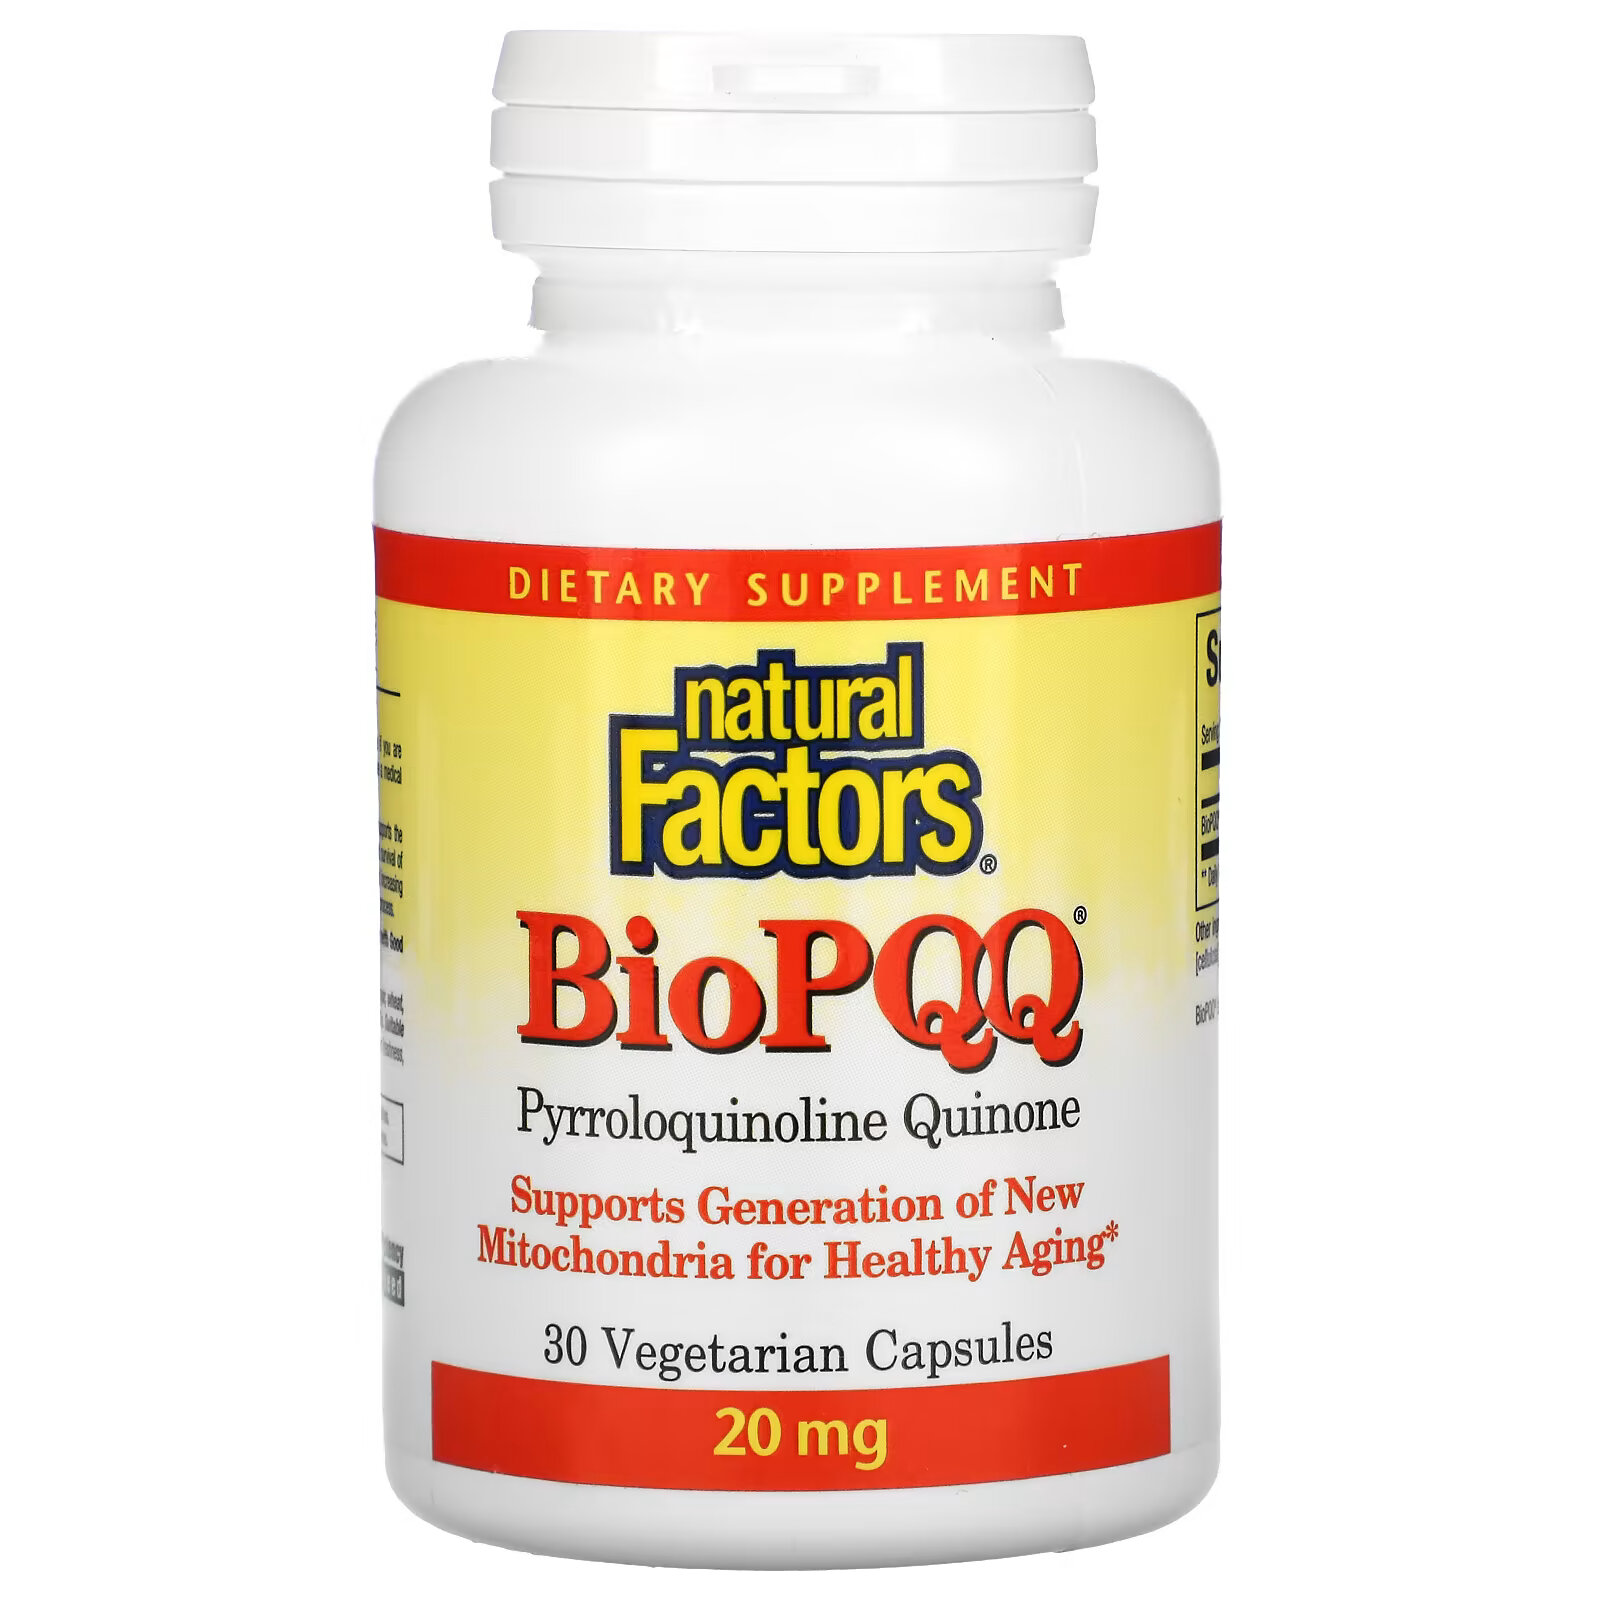 natural factors теракурмин двойная сила действия 30 вегетарианских капсул Natural Factors, BioPQQ, 20 мг, 30 вегетарианских капсул